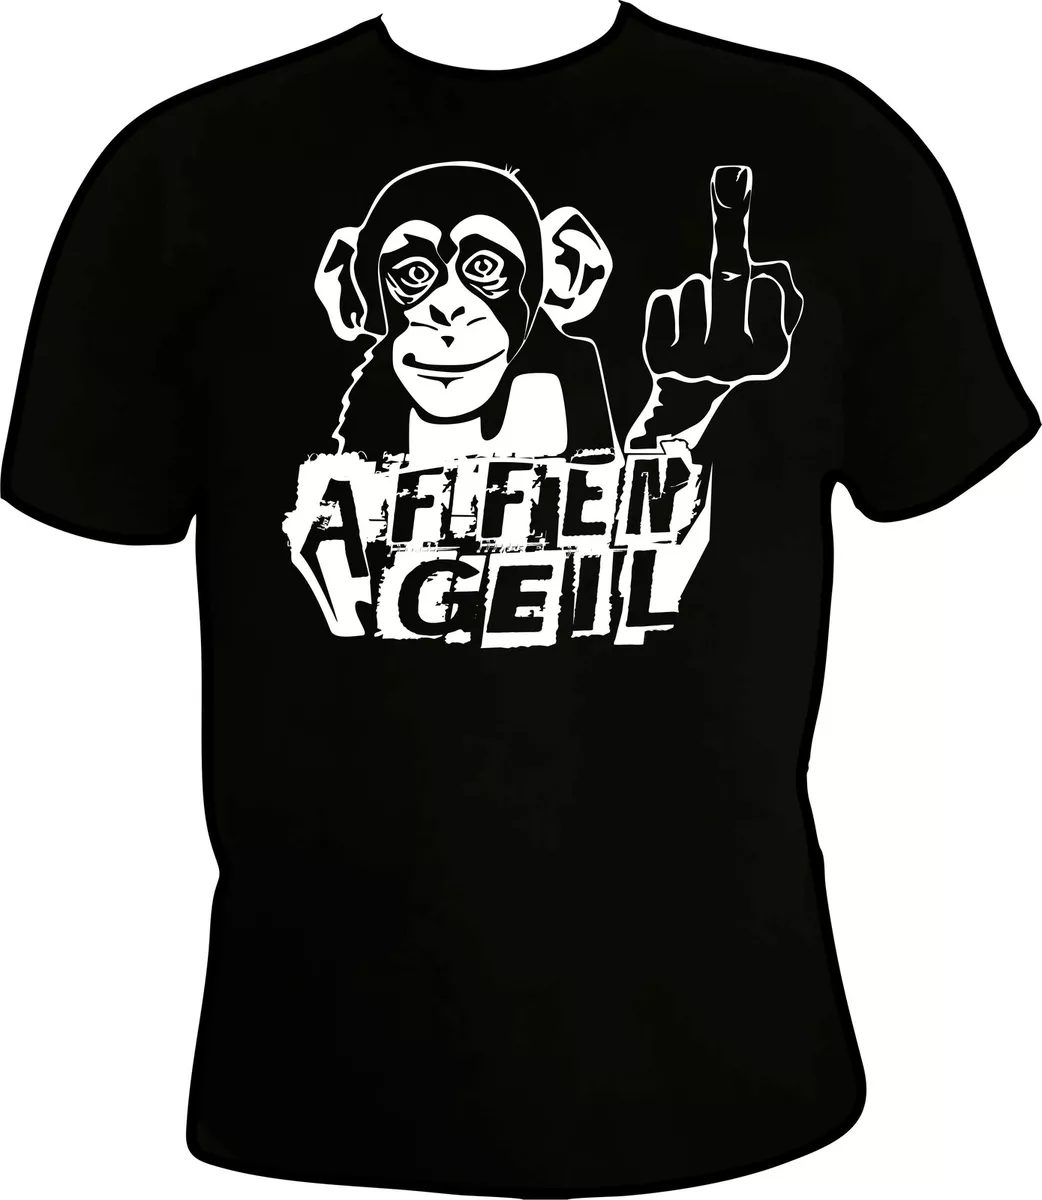 Affen Geil T-shirt,funshirt,sprüche,lustig,Affe,mittelfinger,stinkefinger,party